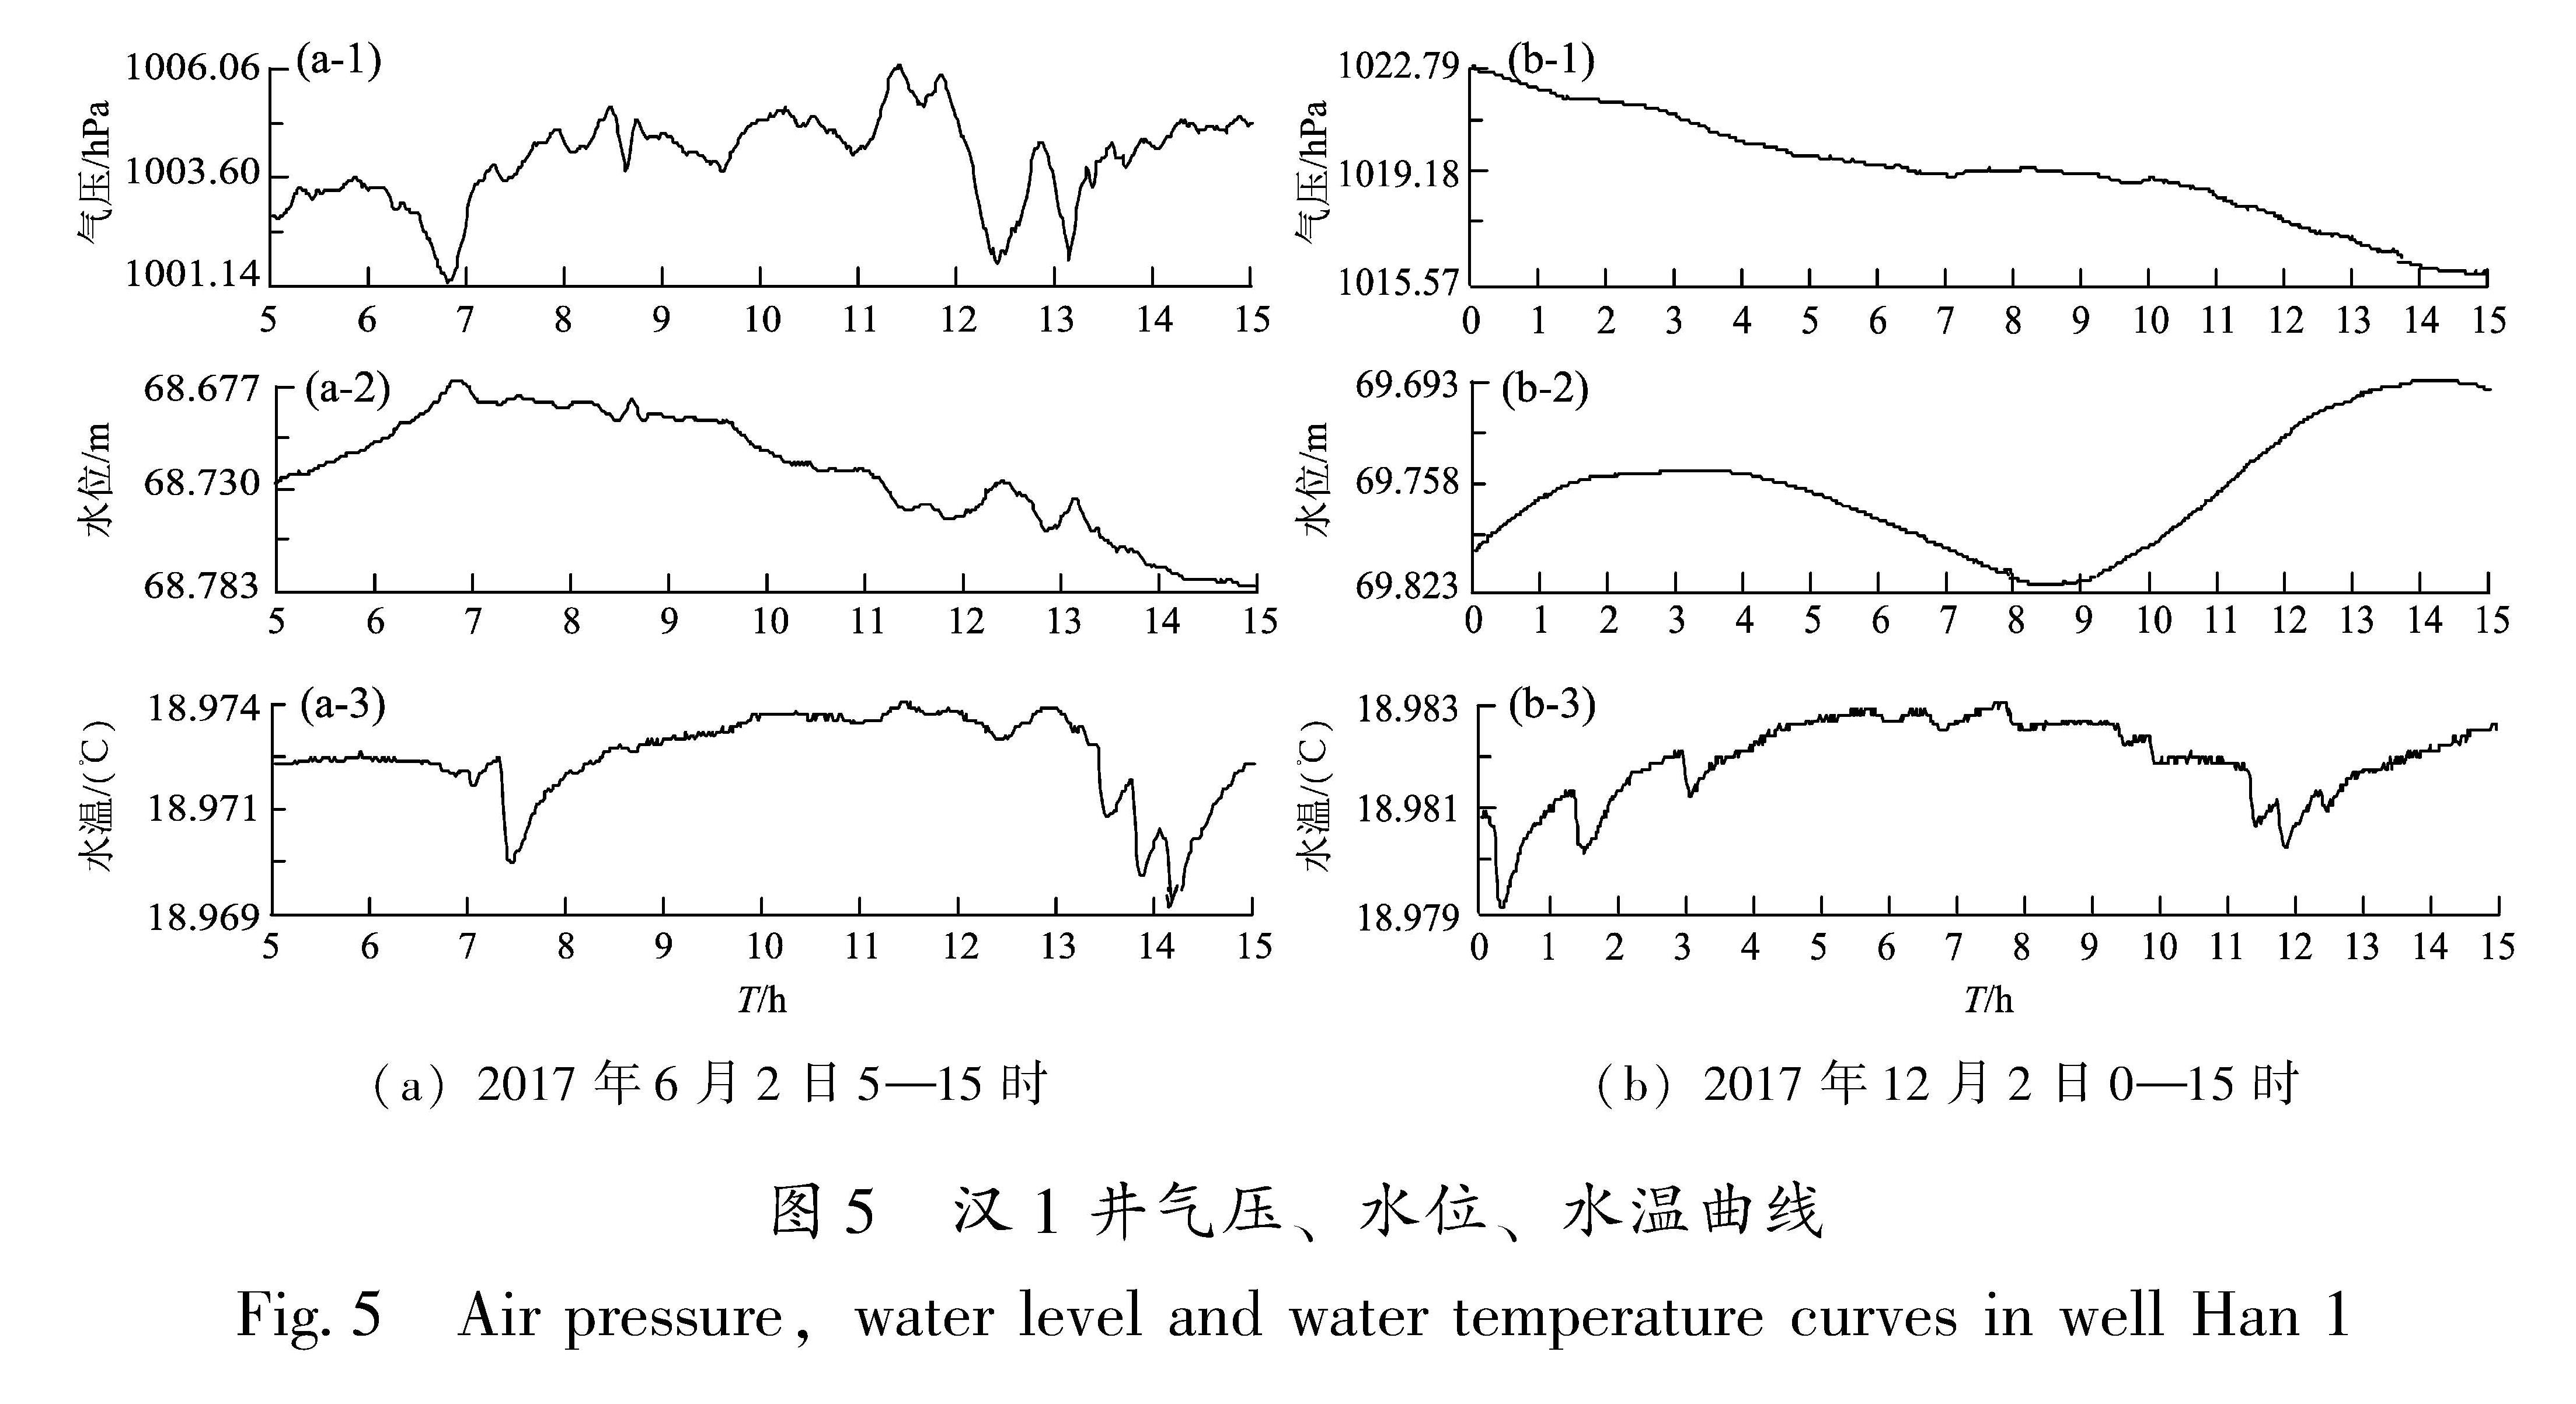 图5 汉1井气压、水位、水温曲线<br/>Fig.5 Air pressure,water level and water temperature curves in well Han 1